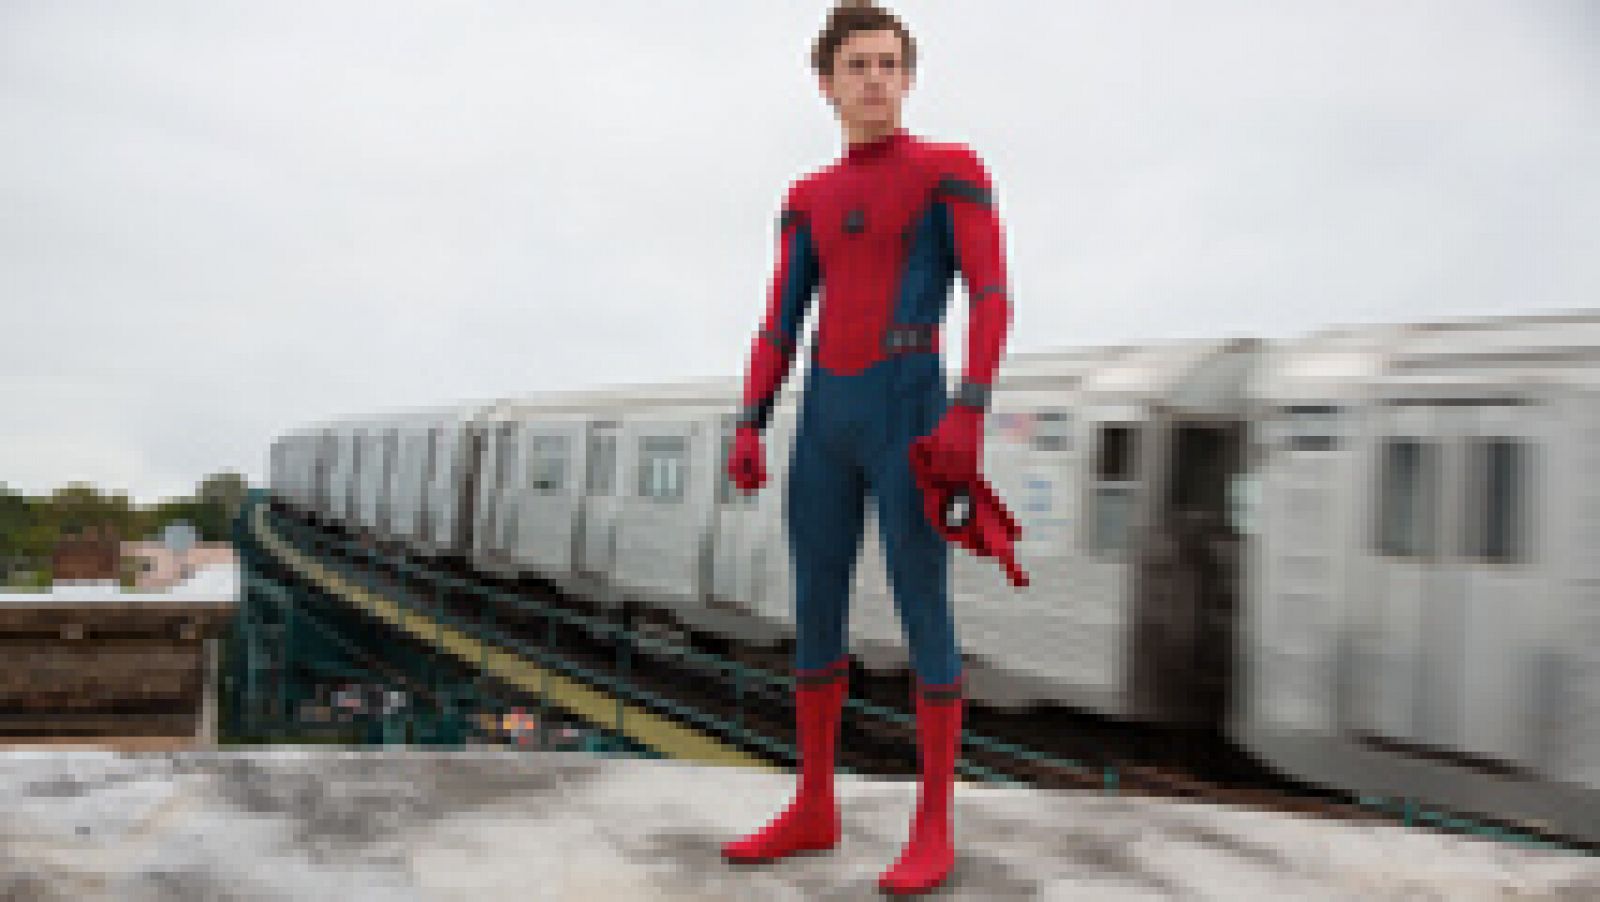 Nuevo tráiler de 'Spider-Man Homecoming'